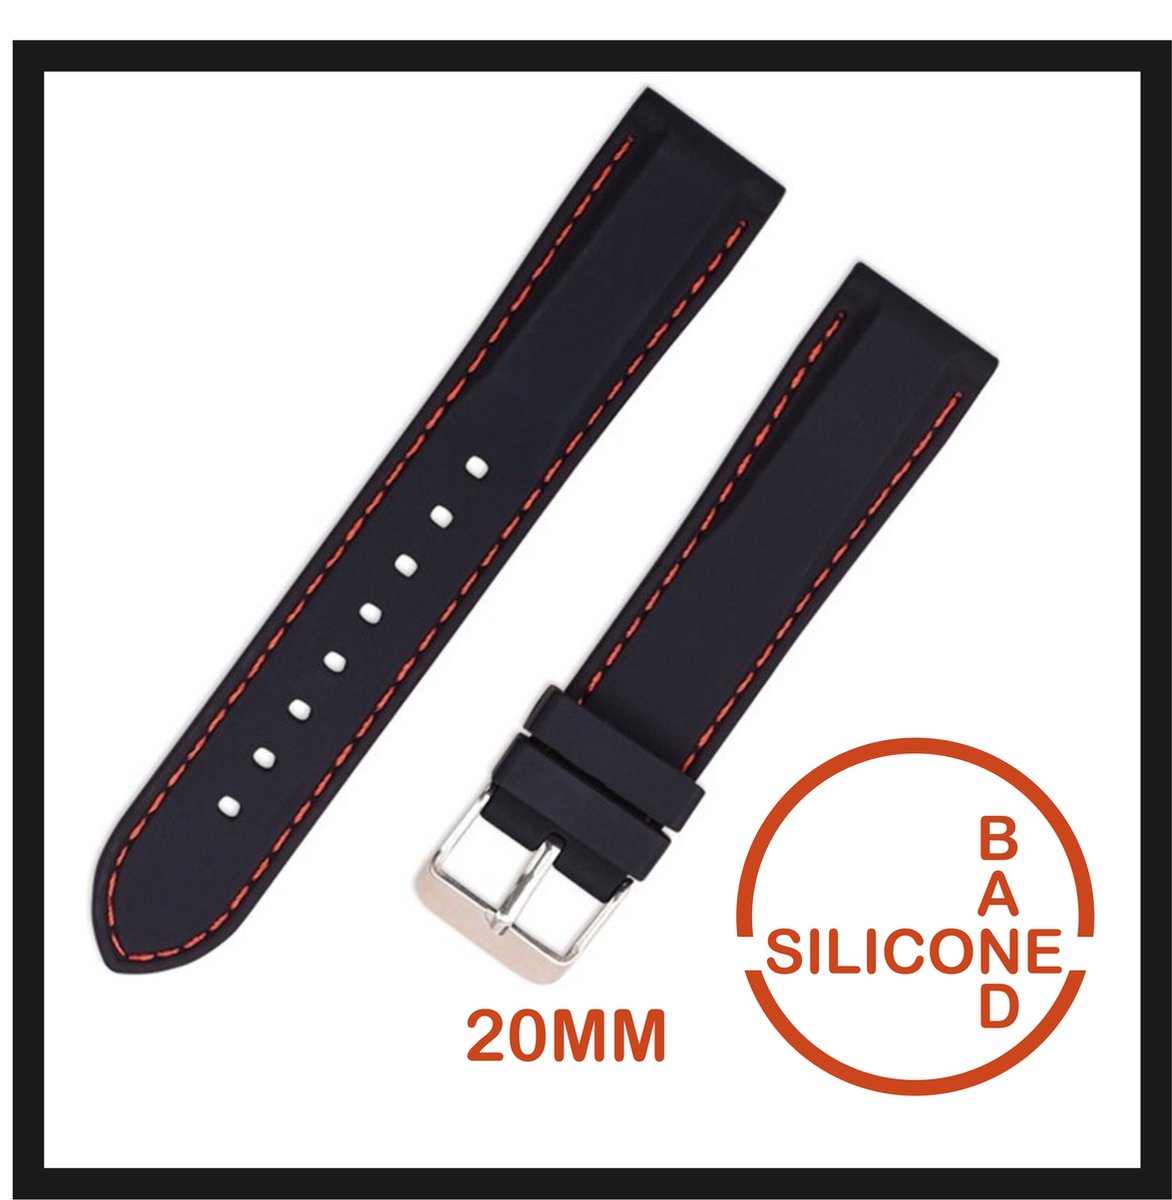 20mm Rubber Siliconen horlogeband zwart met Oranje stiksels passend op o.a Casio Seiko Citizen en alle andere merken - 20 mm Bandje - Horlogebandje horlogeband